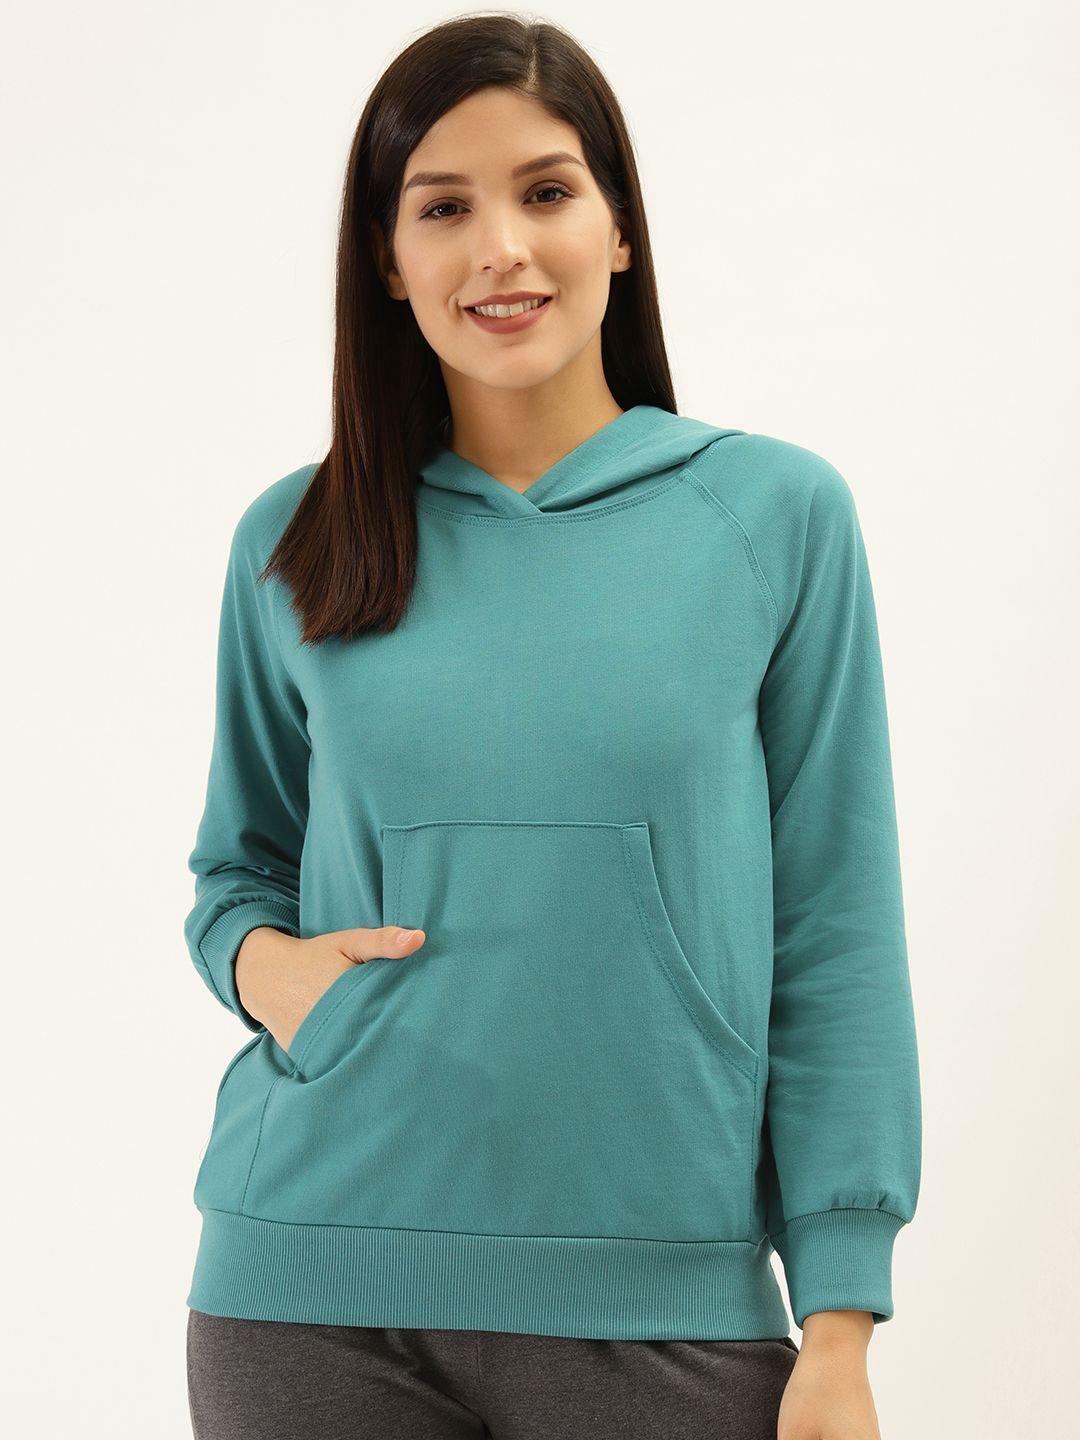 laabha-women-teal-green-solid-hooded-sweatshirt